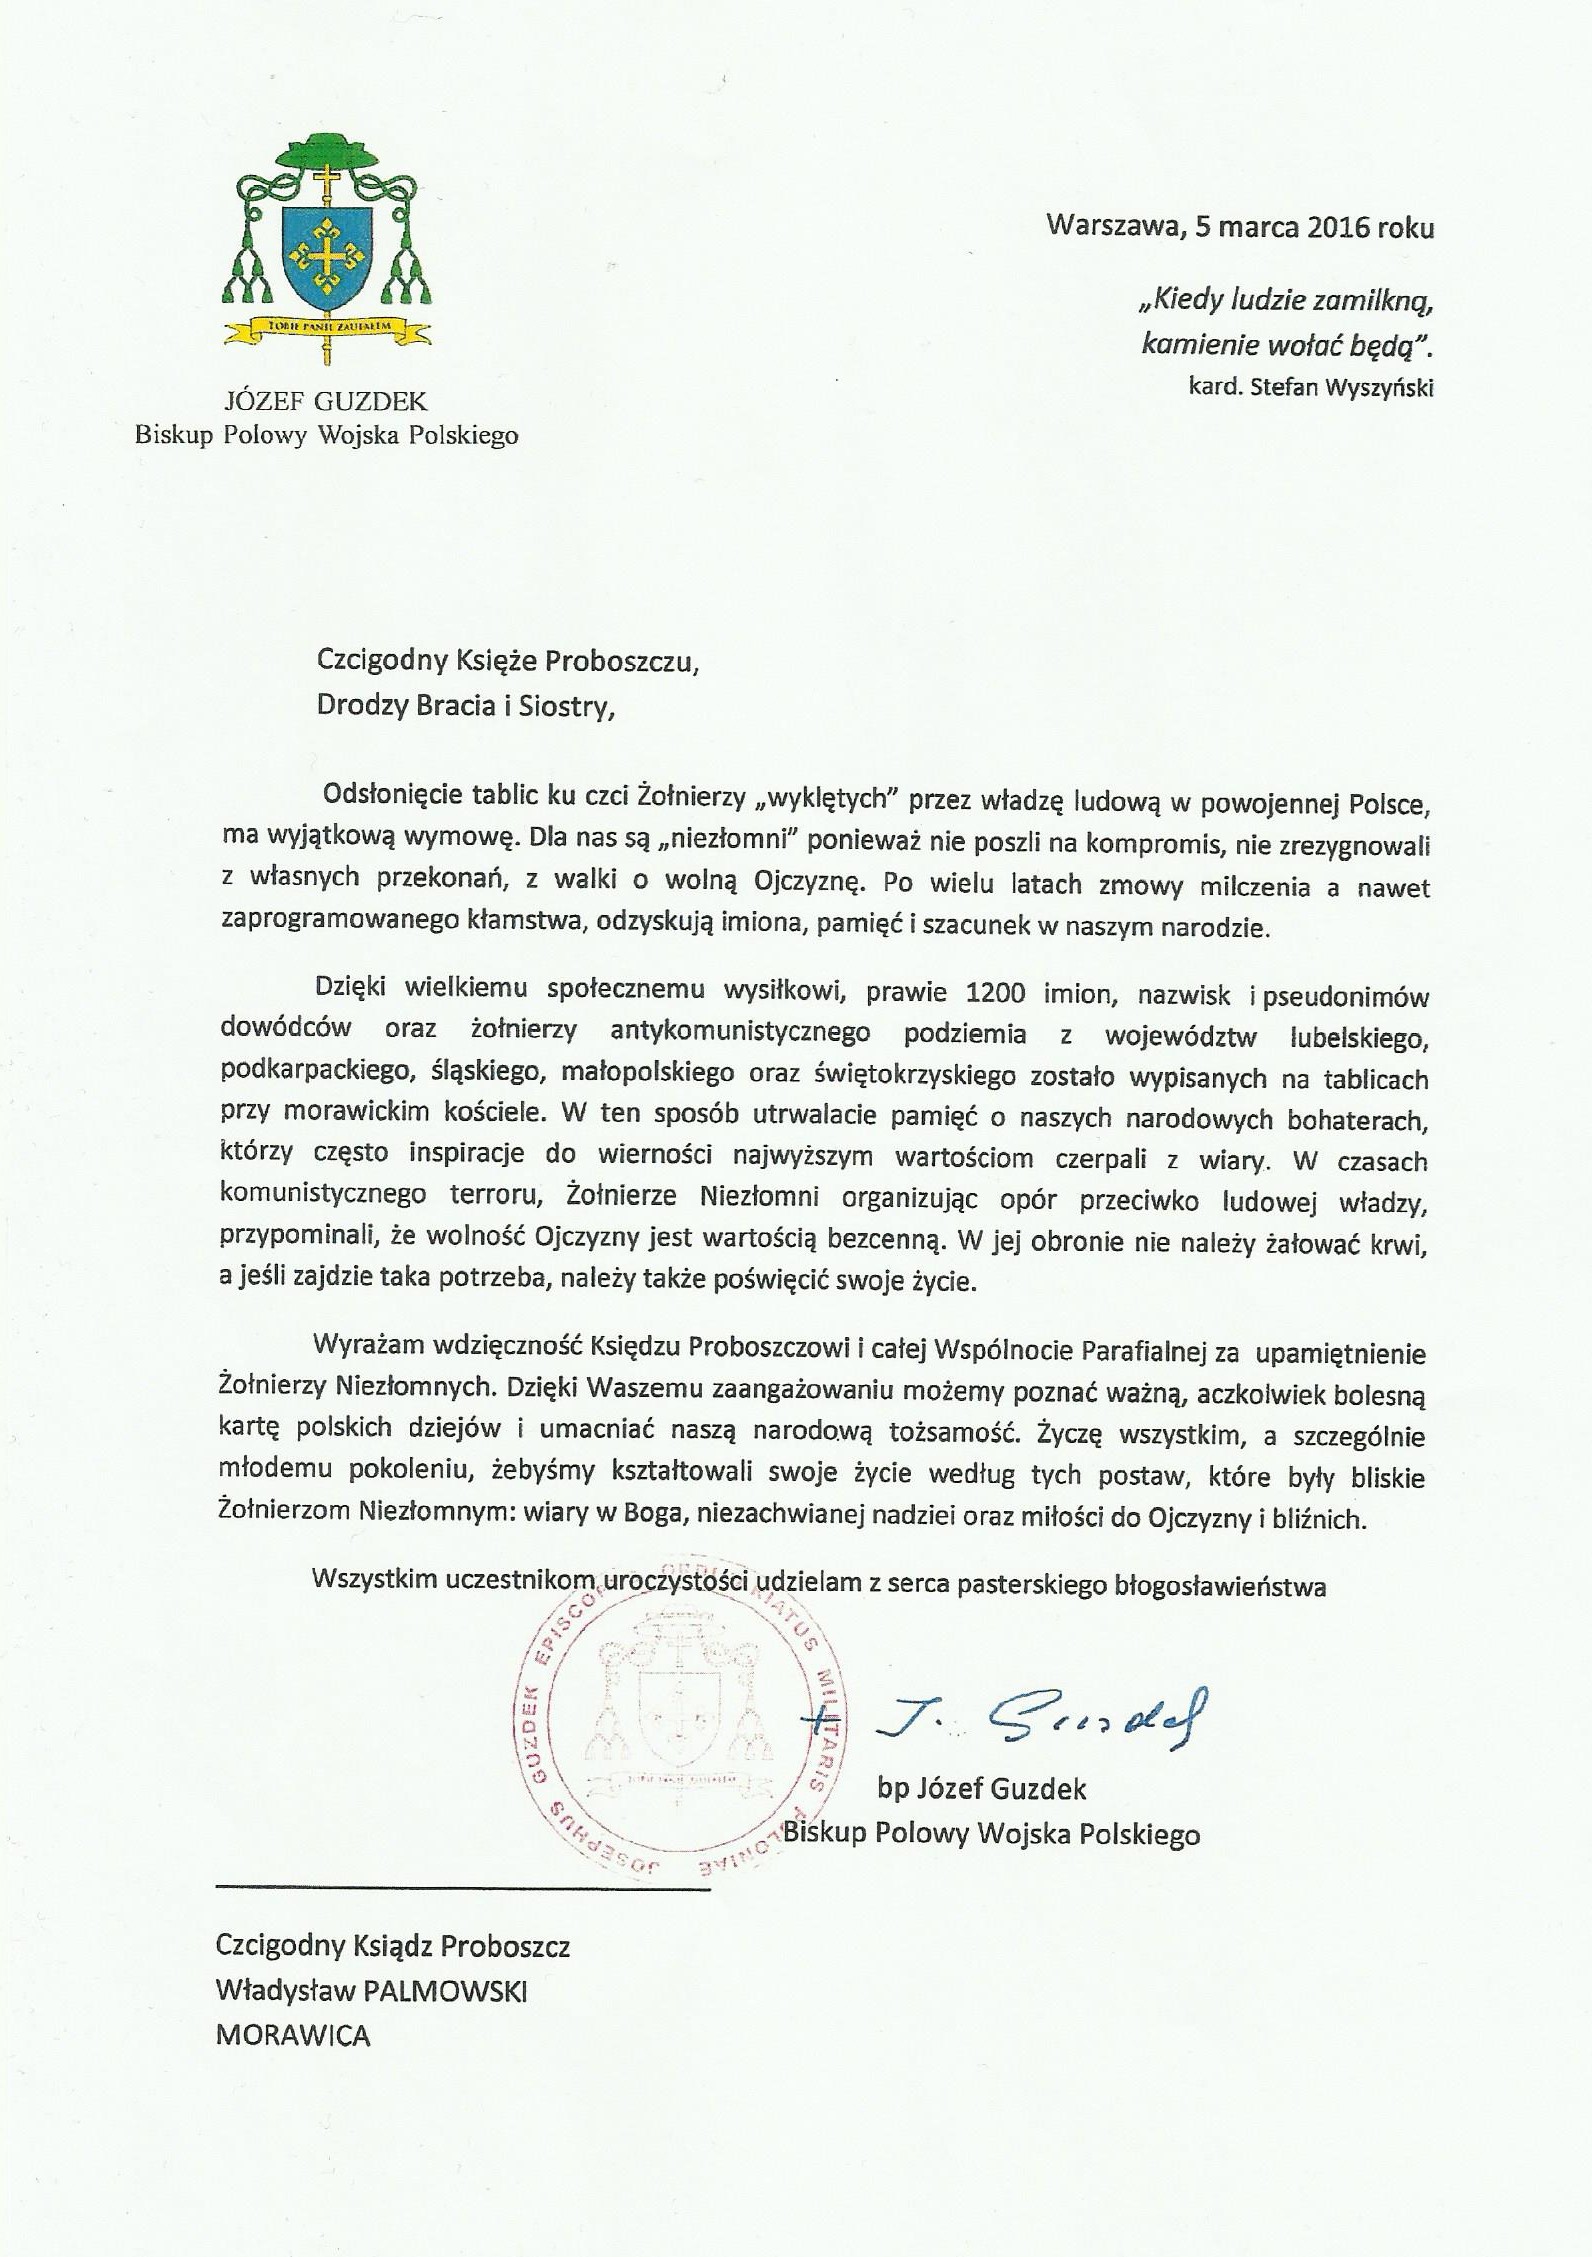 List Bp Józefa Guzdka 05.03.2016